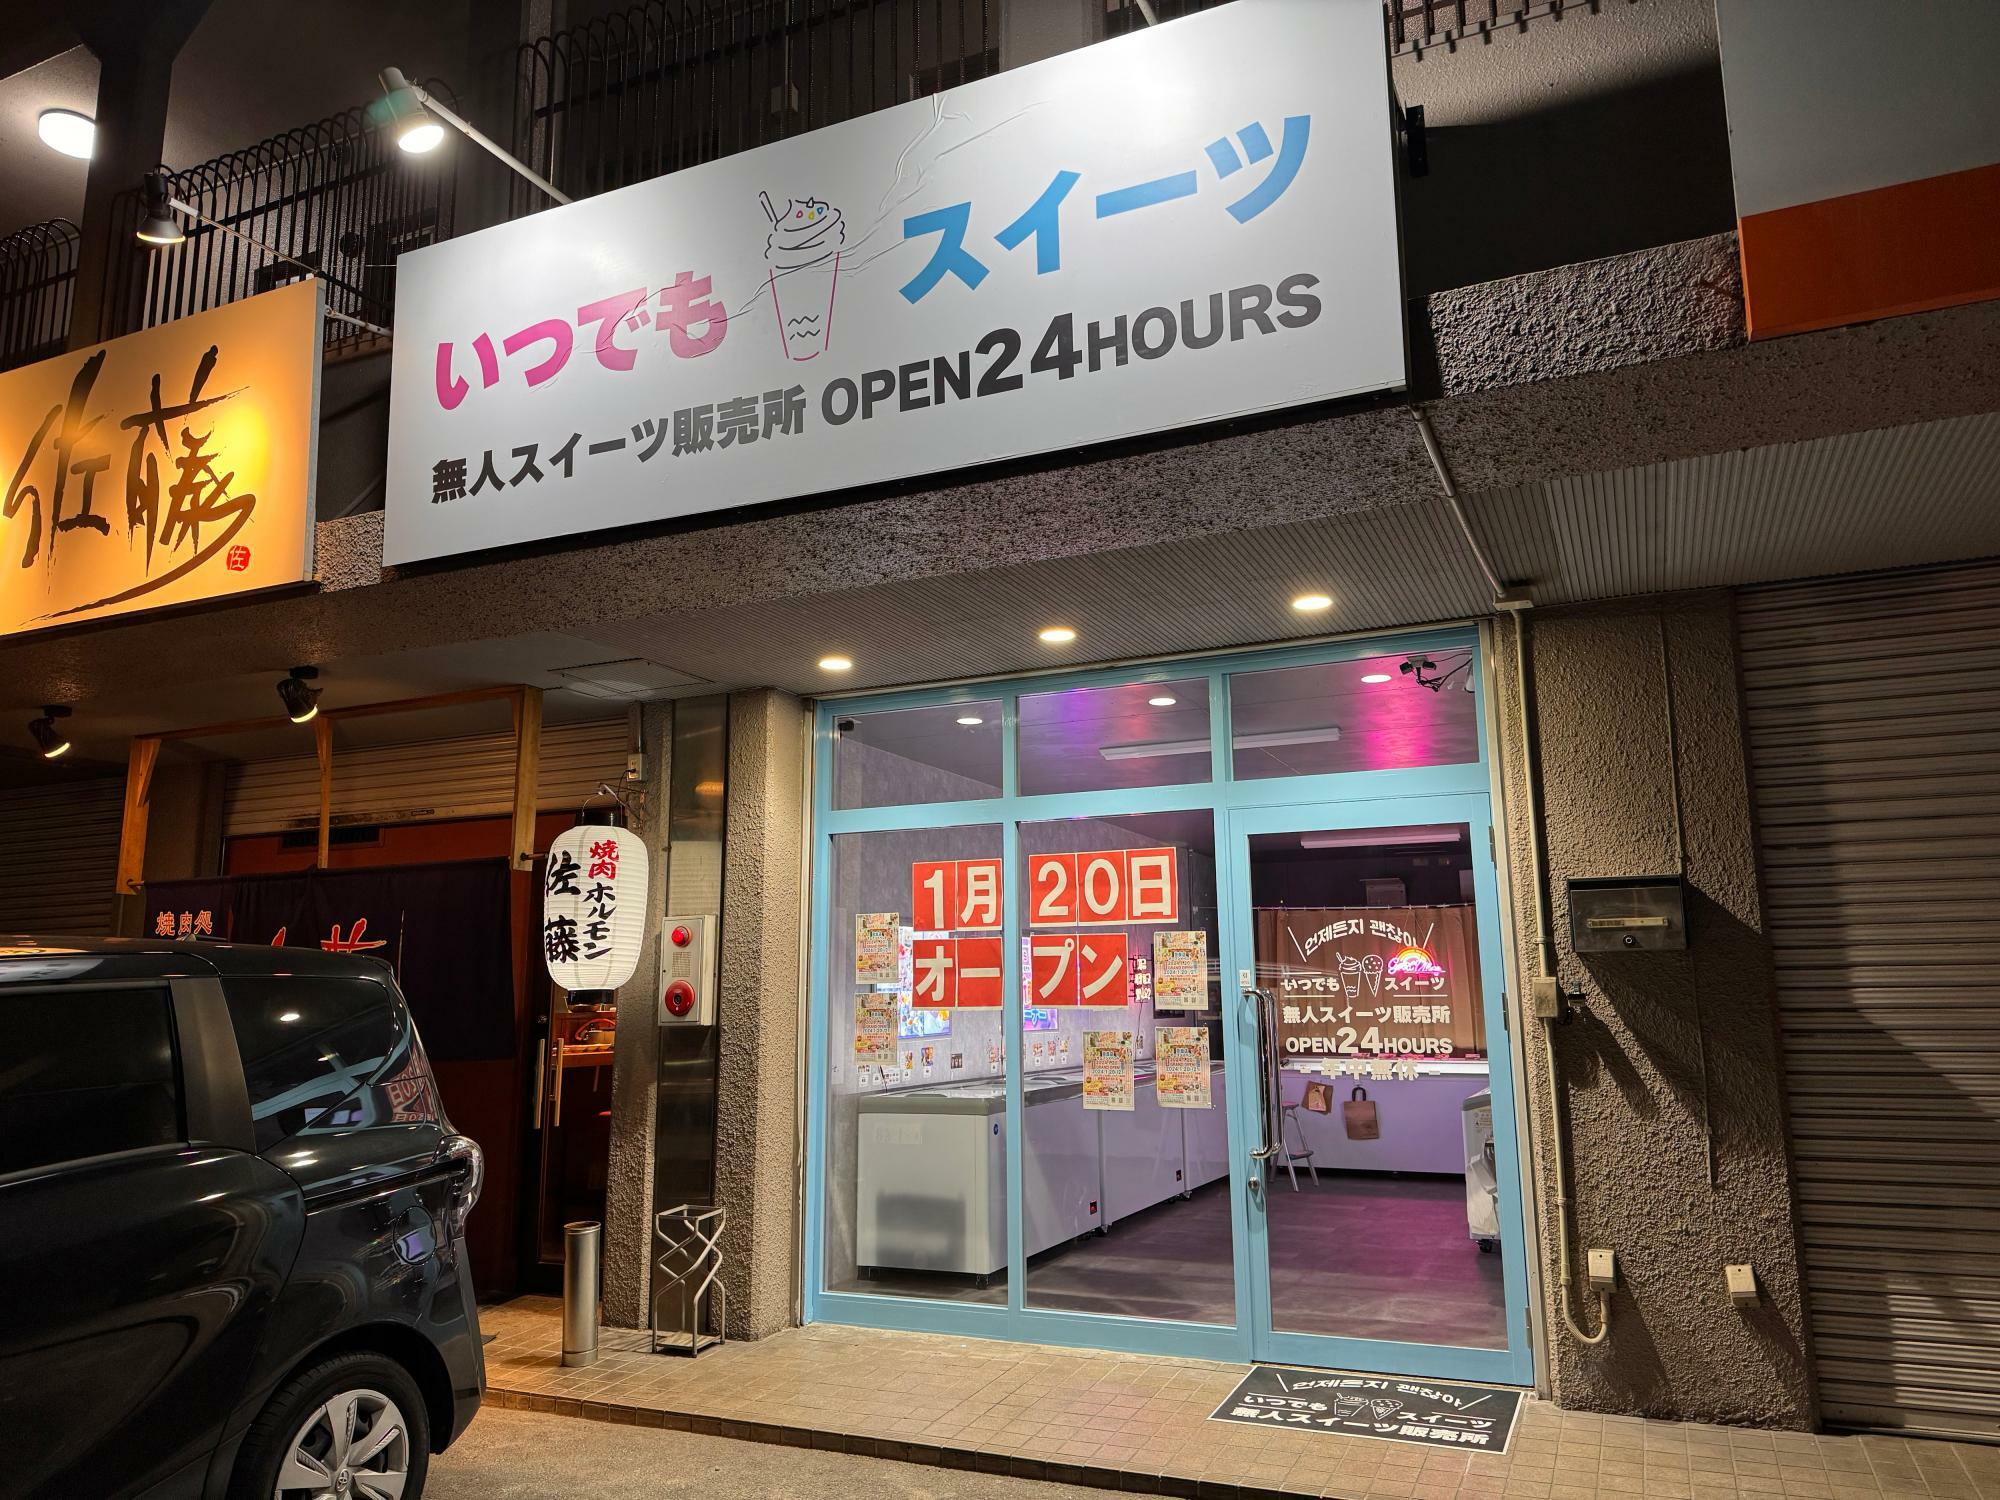 近畿では和歌山に続き、二店舗目の出店